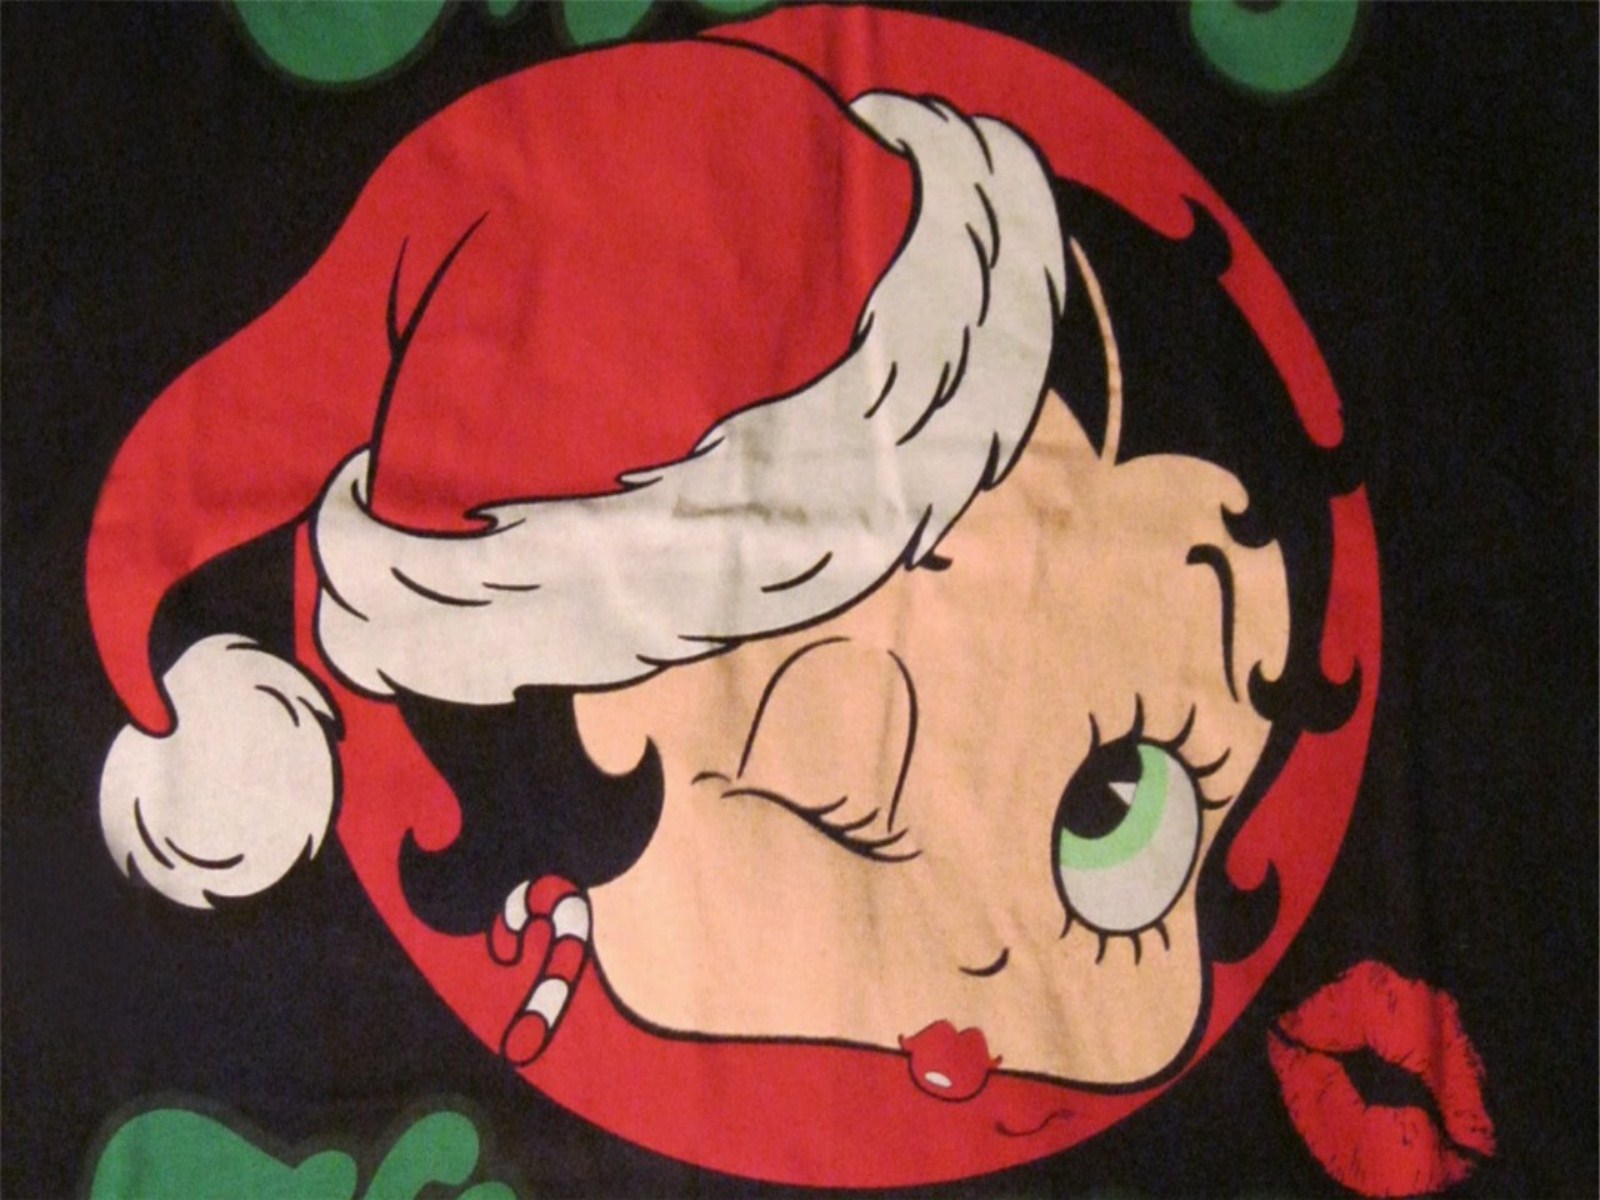 Betty Boop Desktop Wallpaper Image